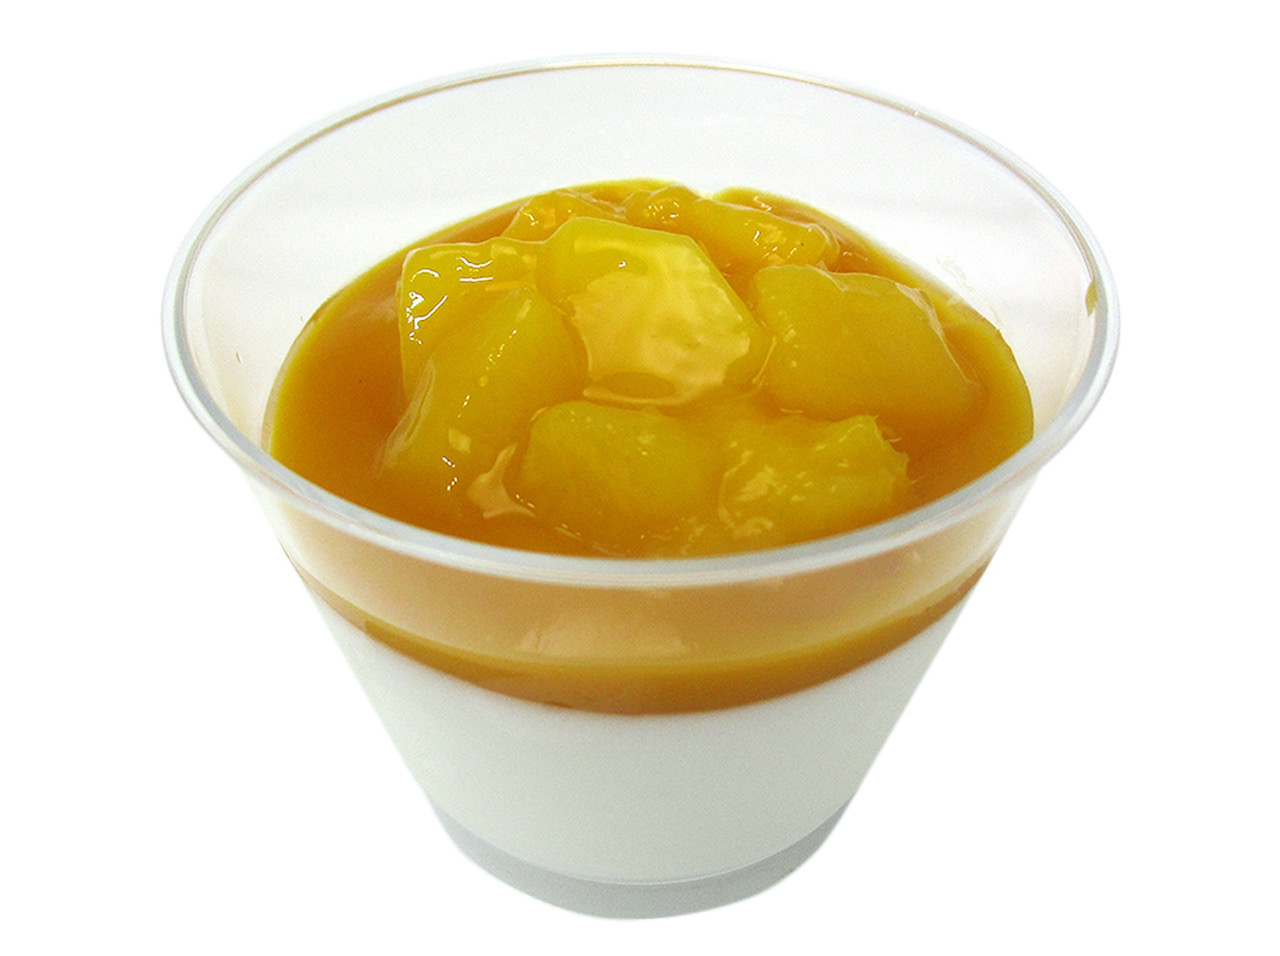 ふんわり食感のレアチーズムースと酸味の効いたマンゴーソースを組み合わせ、見た目にごろっとしたマンゴーが映えるカップスイーツです。